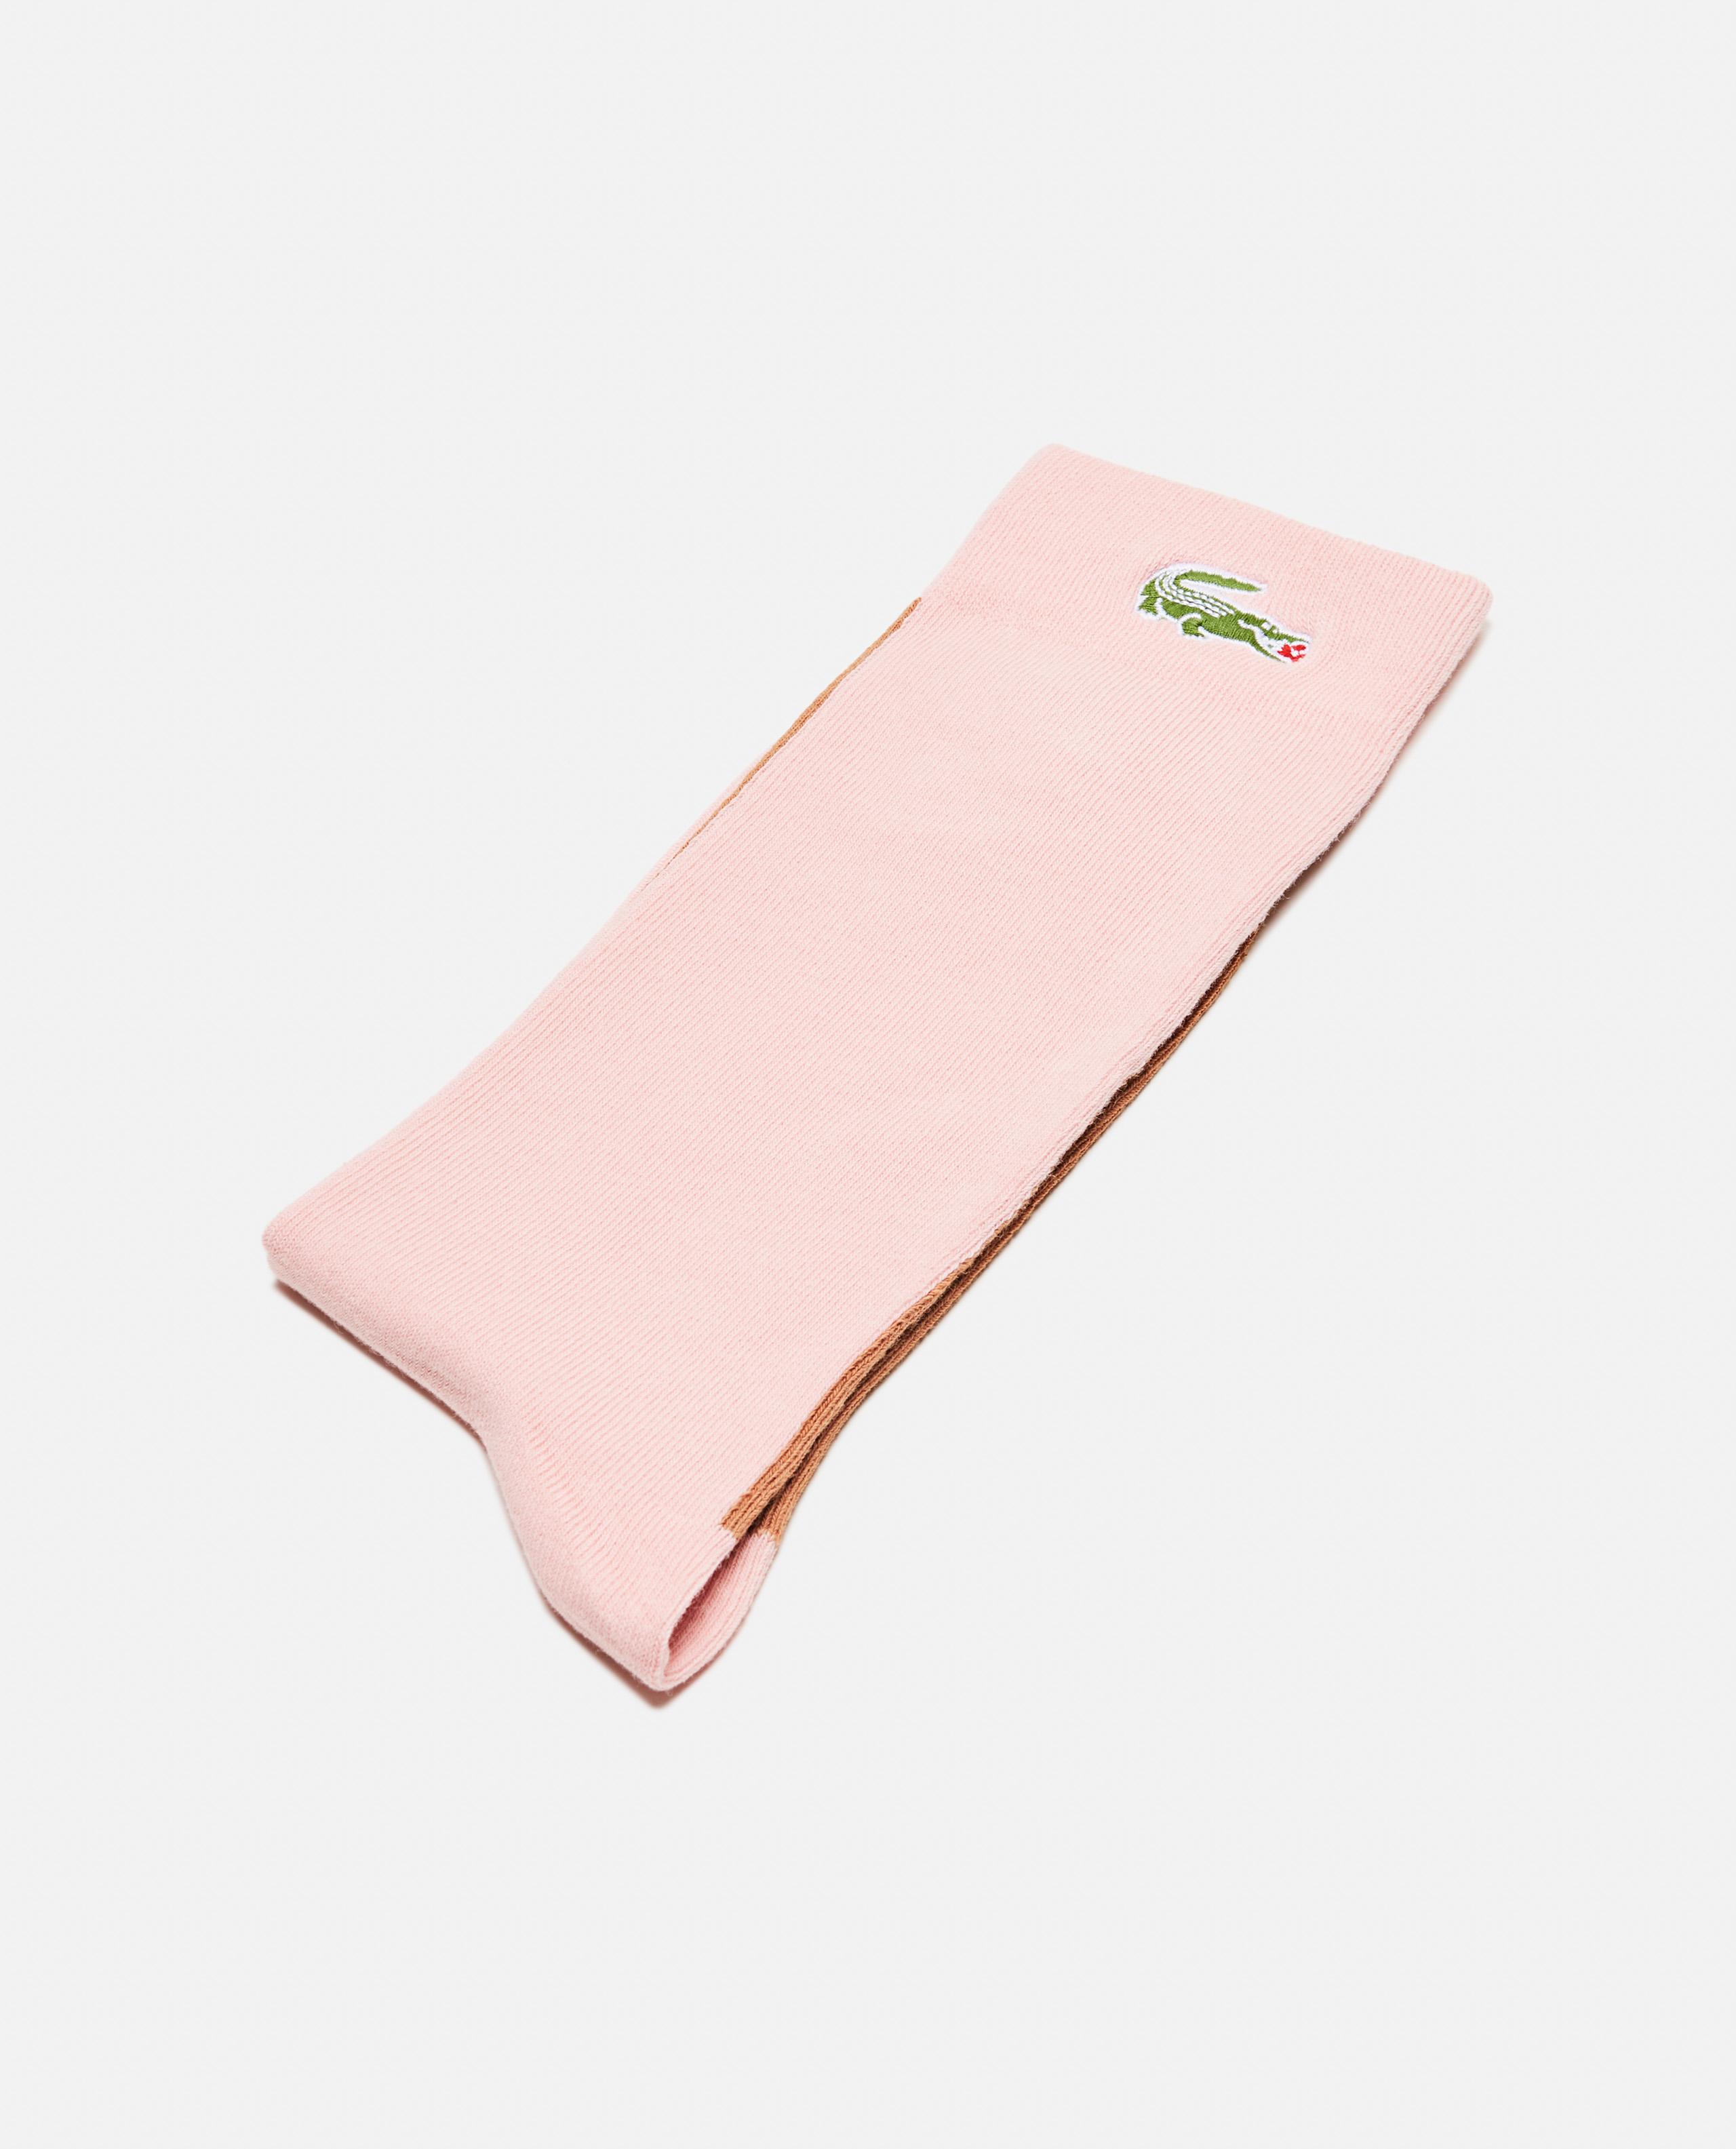 pink lacoste socks